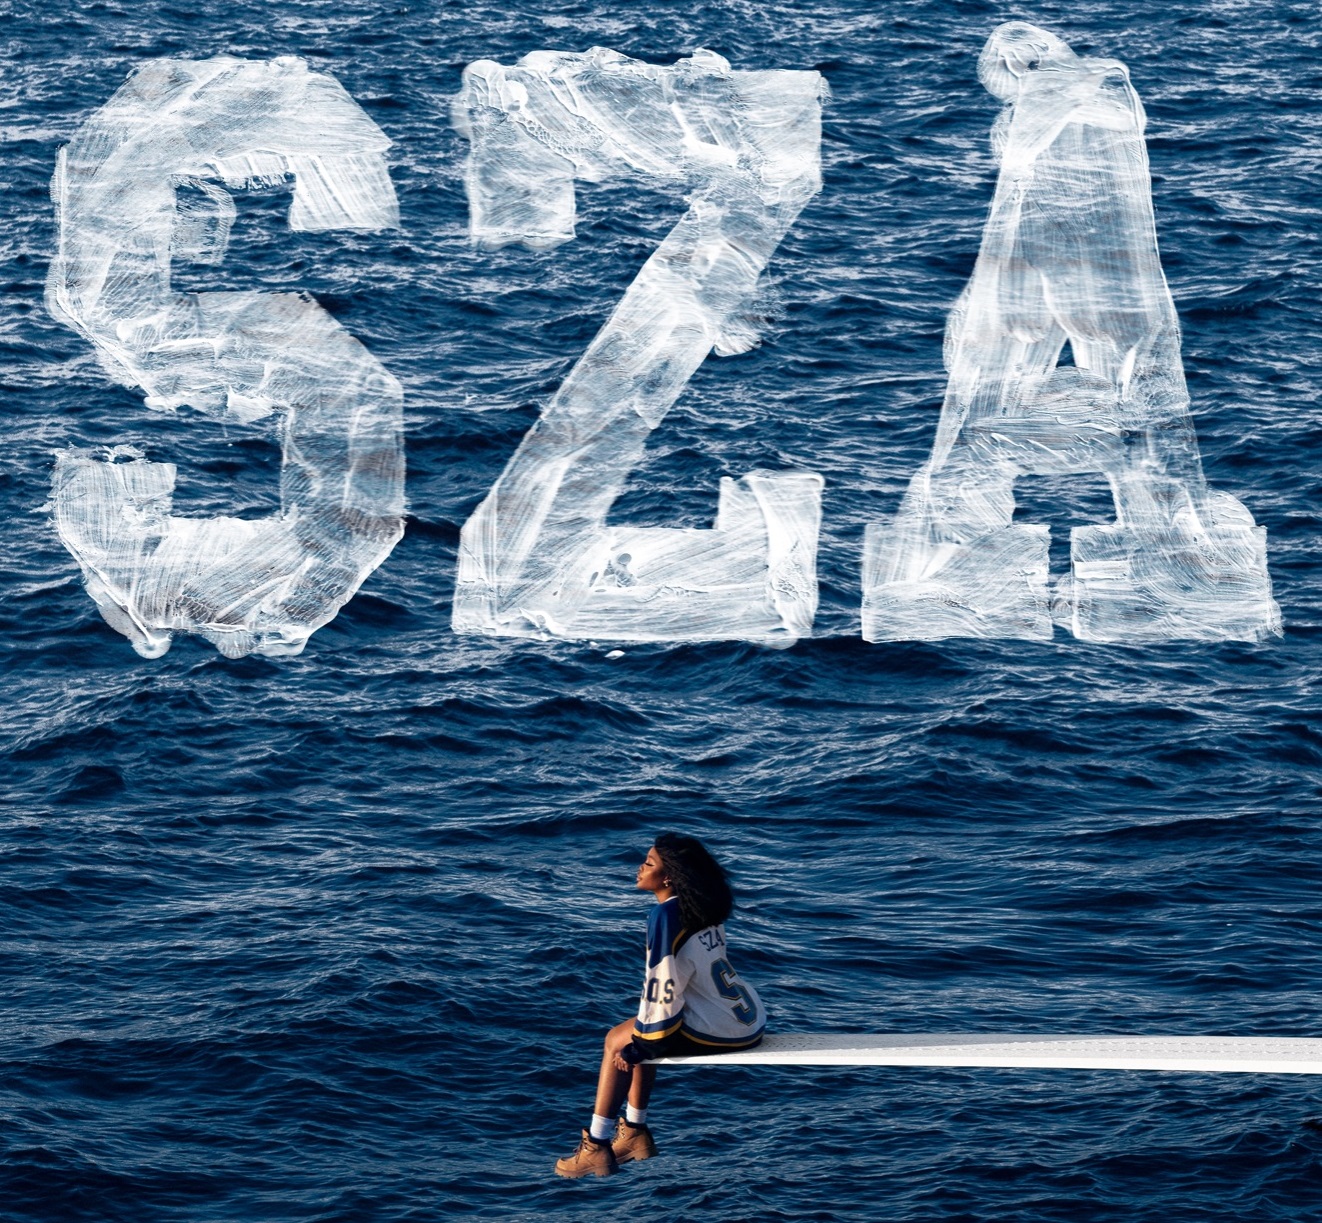 SZA Reveals 'S.O.S.' Album Artwork